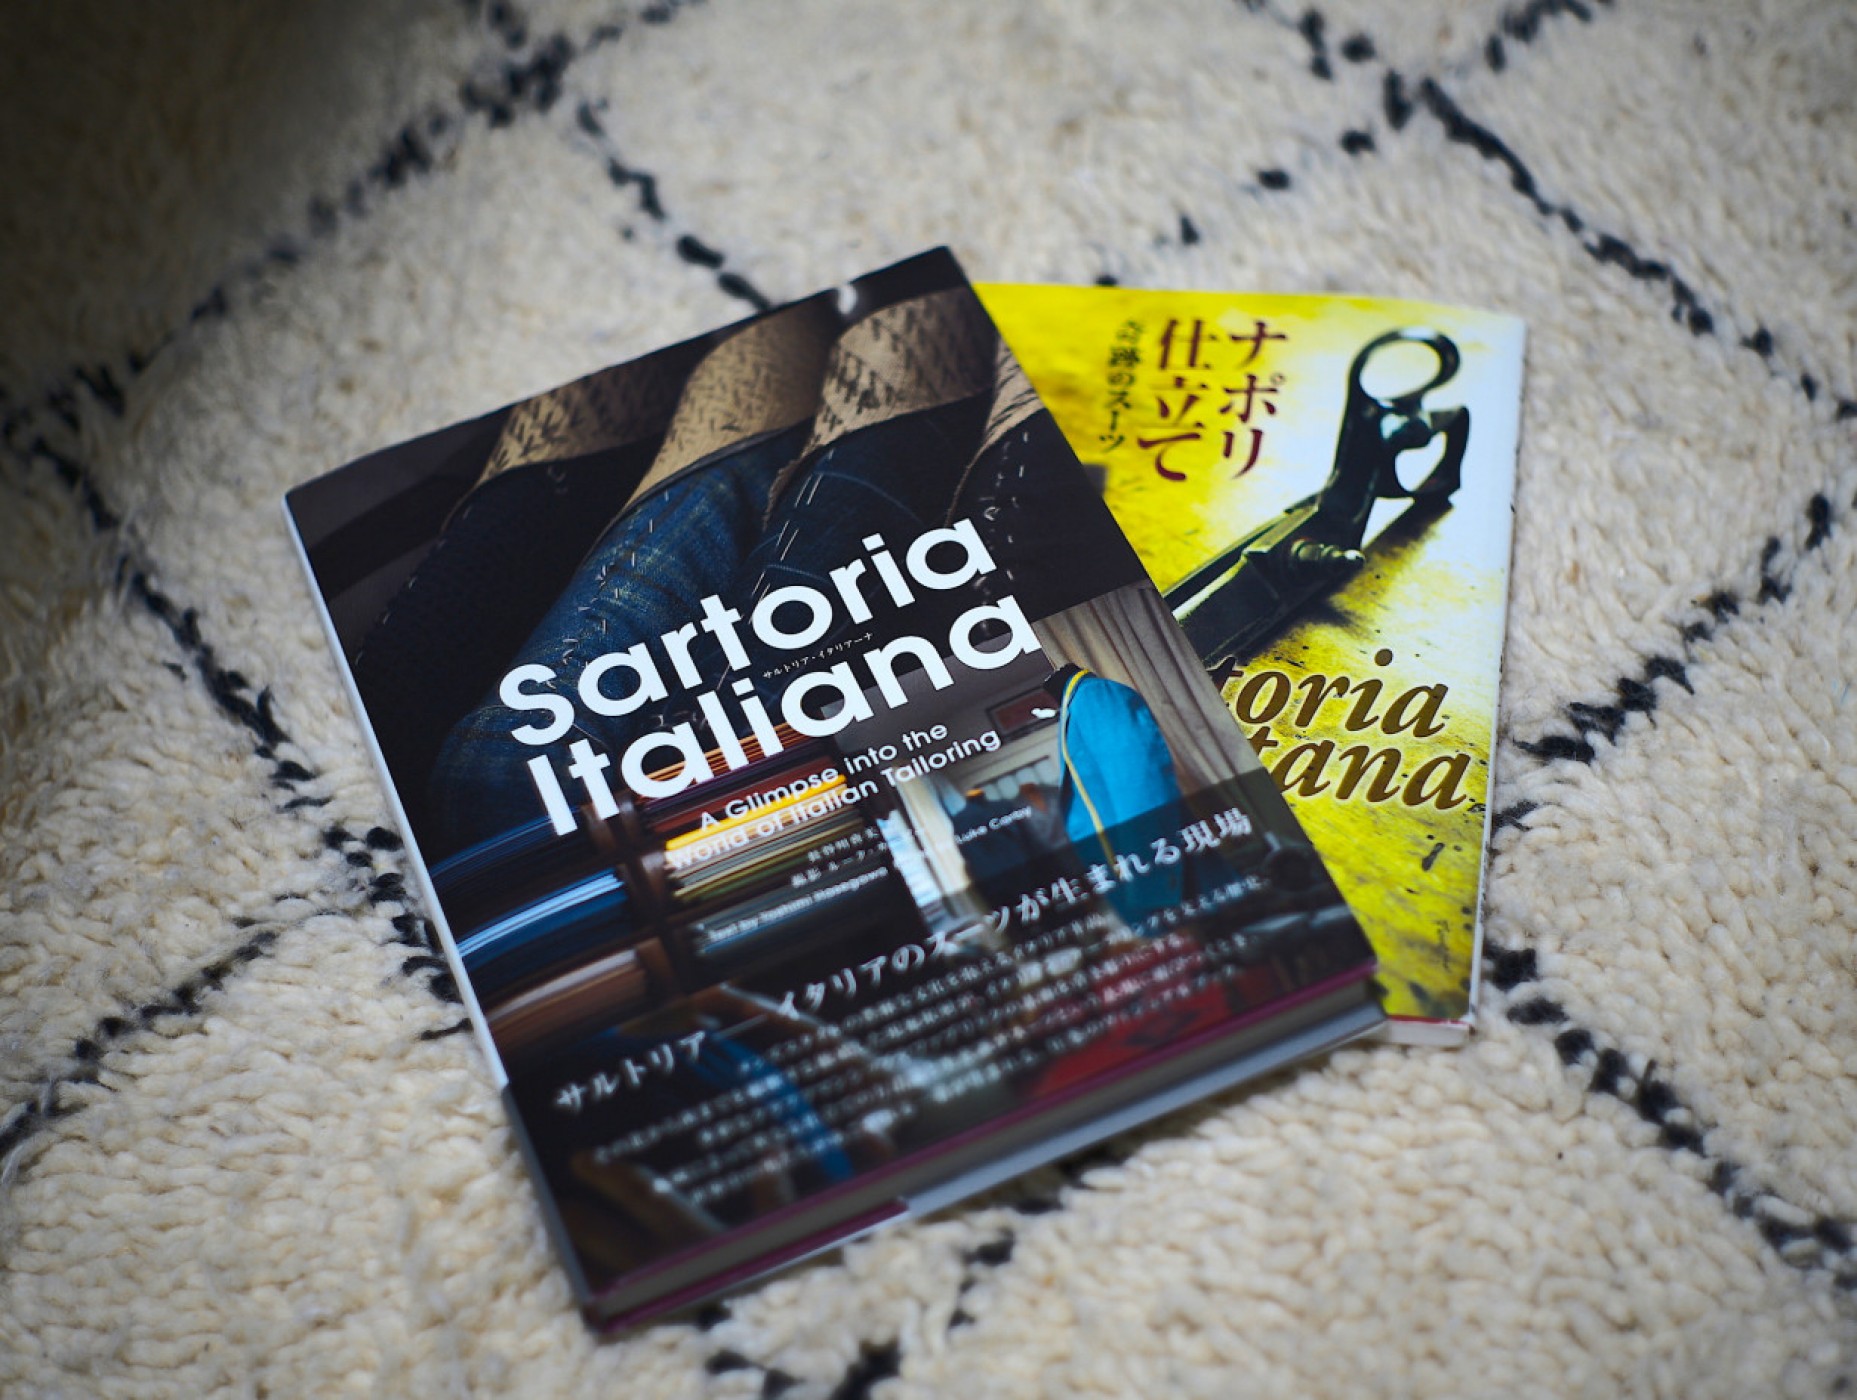 「サルトリア・イタリアーナ」は現在大好評発売中。「ナポリ仕立て」は絶版しており、プレミア価格がついている。